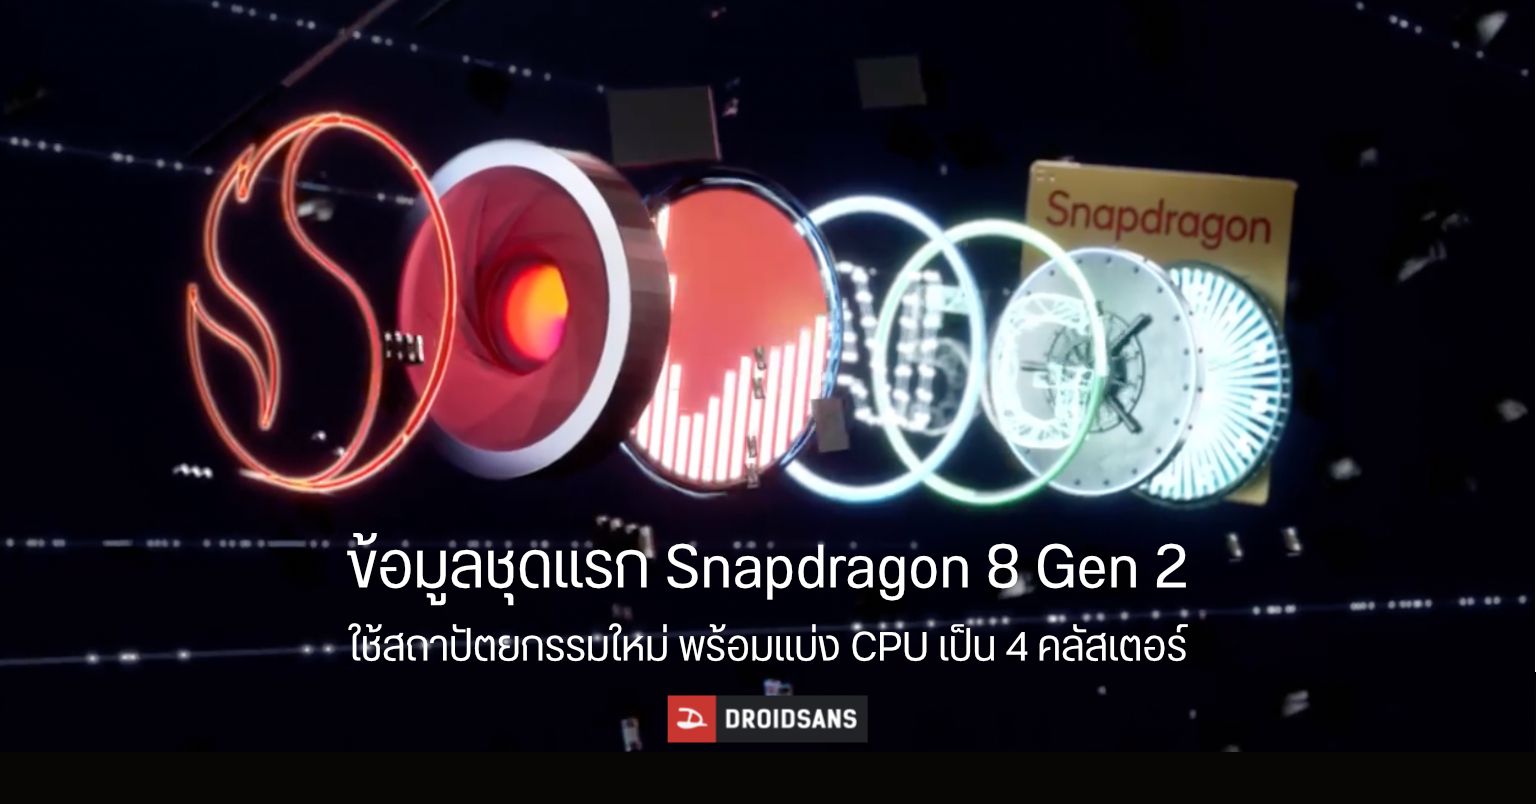 หลุดสเปค Snapdragon 8 Gen 2 อาจมีการใช้แกนประมวลผลรุ่นเก่าร่วมด้วย บนโครงสร้างใหม่แบบ 4 คลัสเตอร์